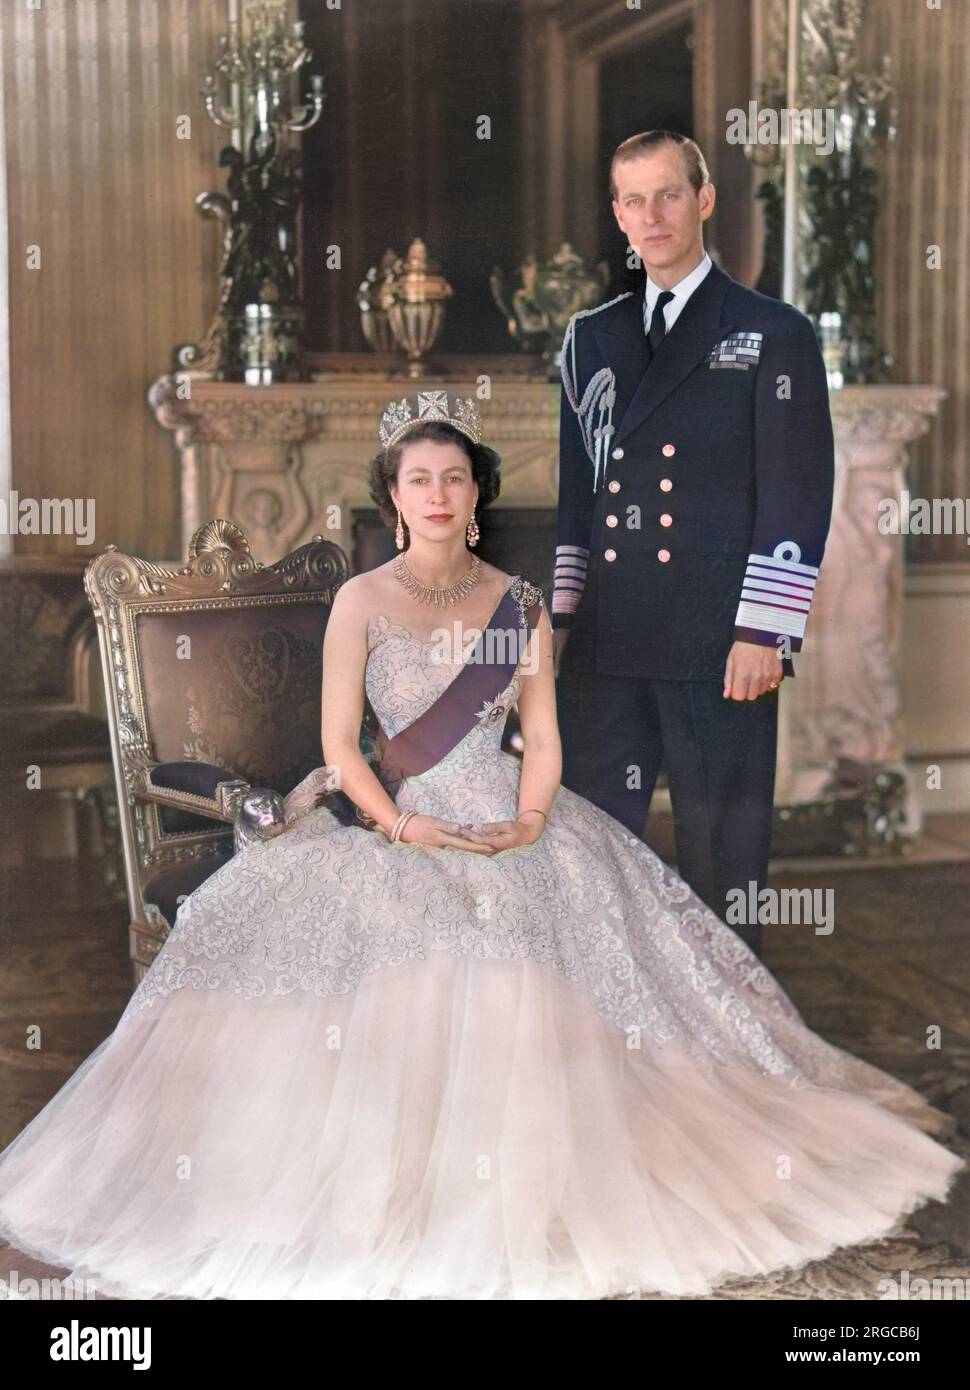 Königin Elizabeth II. Und Prinz Philip, Herzog von Edinburgh, wurden 1954 zusammen am Grand Entrance im Buckingham Palace fotografiert. Die Königin trägt ein gelbes Abendkleid aus Tülle, dekoriert mit Mimosaspray und goldenen Pailette-Stickereien und trägt das blaue Band und den Star des Strumpfes. Ihre Halskette war ein Hochzeitsgeschenk von Nizam von Hyderabad; das Diadem war auch ein Hochzeitsgeschenk von Königin Mary. Die Schleifenbrosche und die Ohrhänger sind mit Diamanten versehen. Der Herzog trägt die Uniform des Admirals der Flotte. Stockfoto